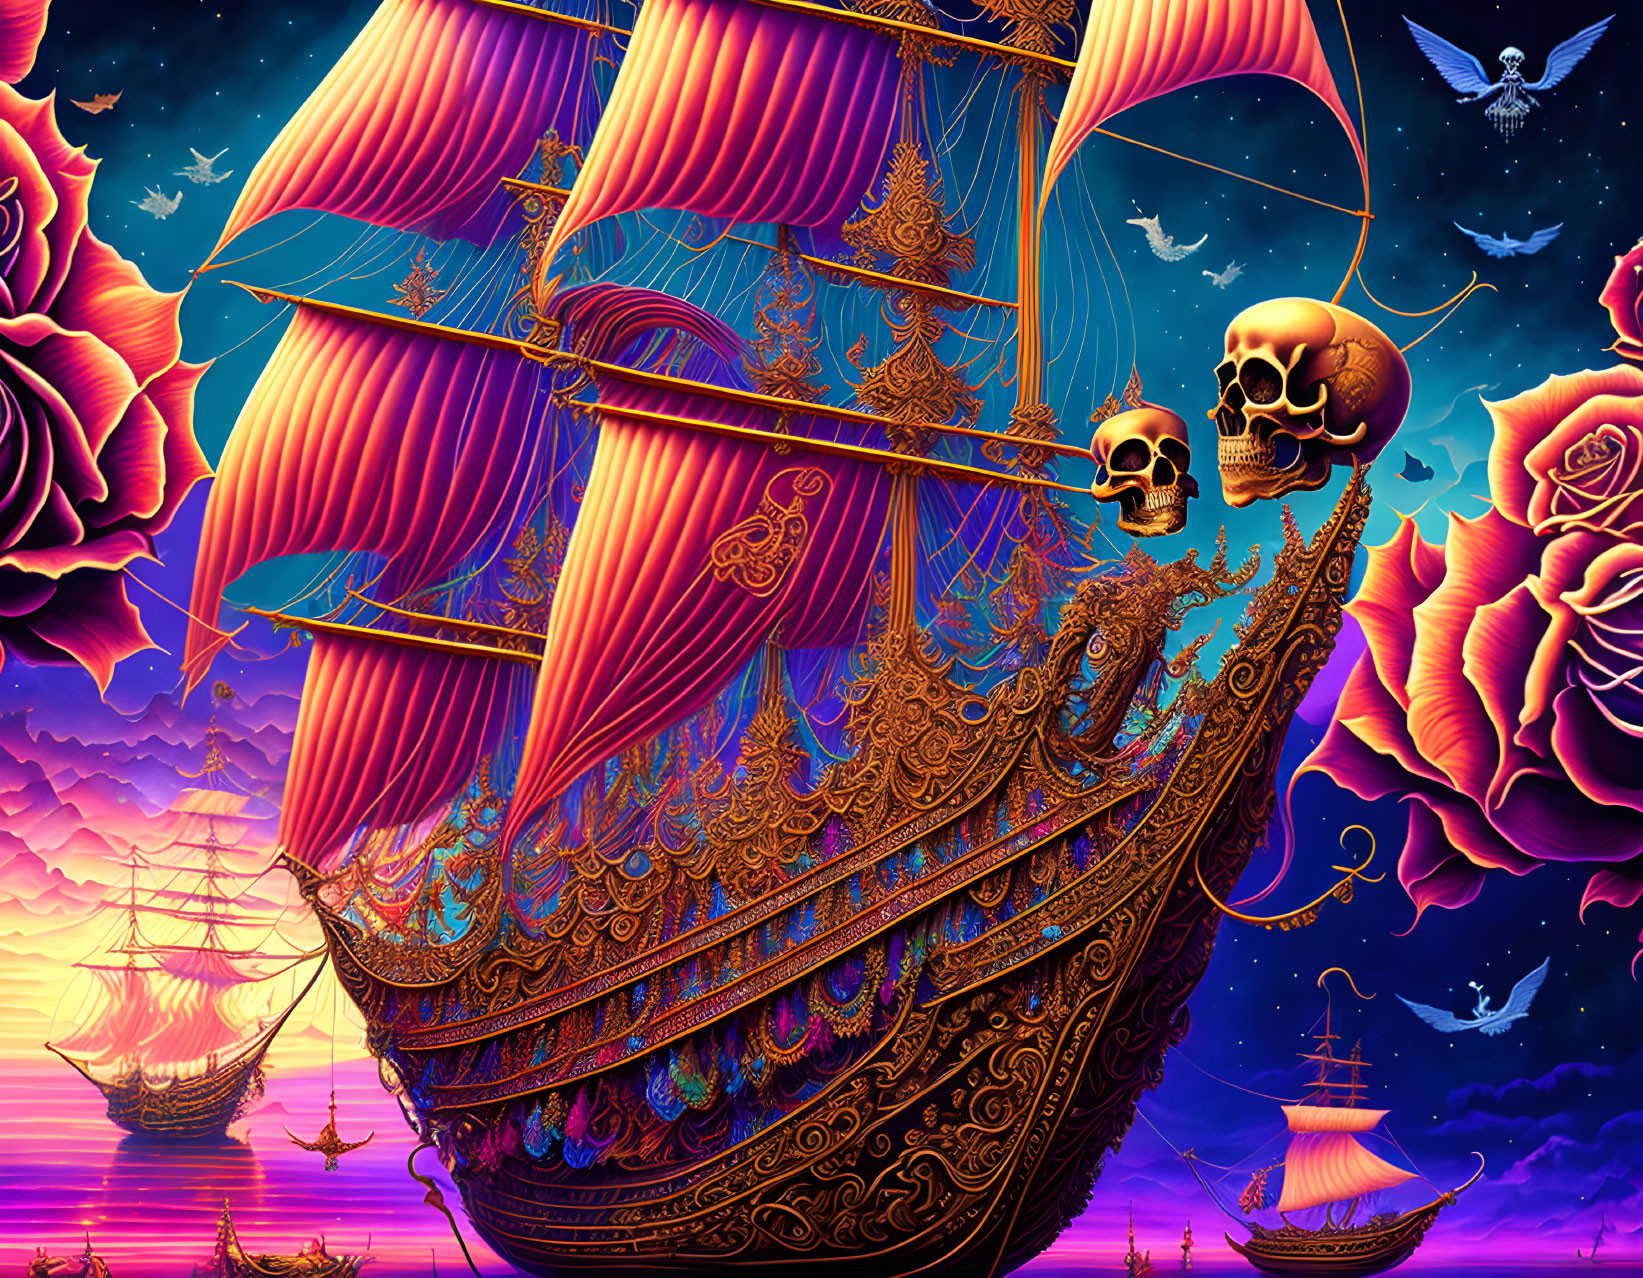 Skeleton pirate ship